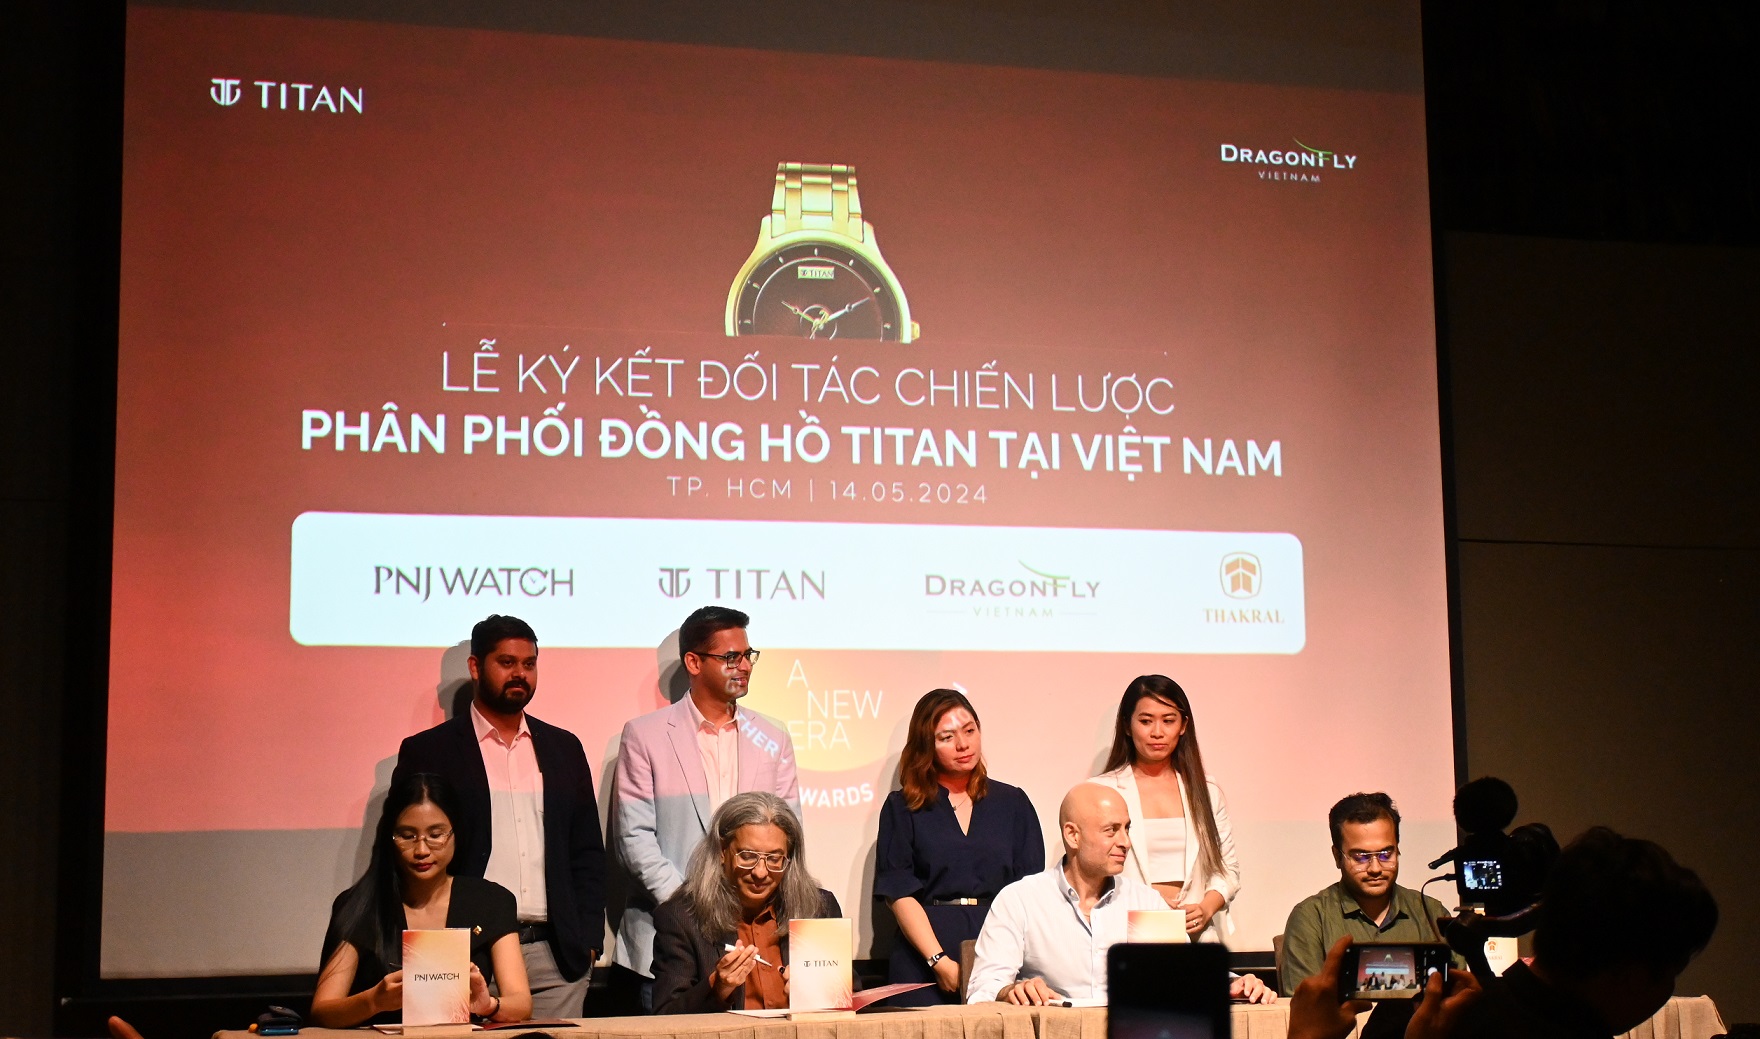 Bộ sưu tập đồng hồ Titan, từ thời trang đến thông minh, chính thức có mặt ở Việt Nam - DSC 1095